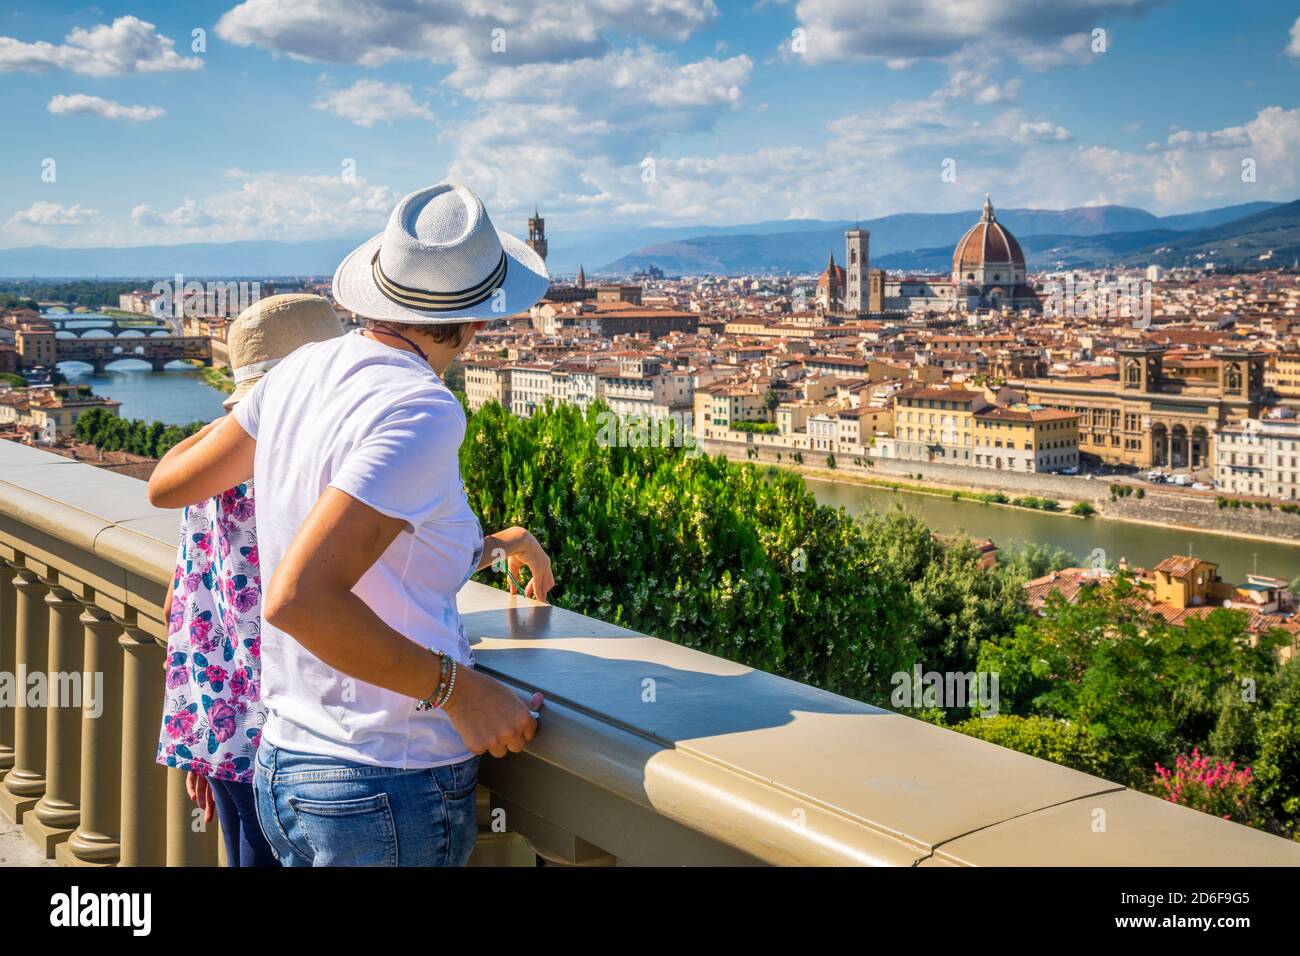 Deux touristes (mère et fille) admirent le centre historique de Florence, avec une vue panoramique sur piazzale michelangelo, Florence, Toscane, Italie, Europe Banque D'Images